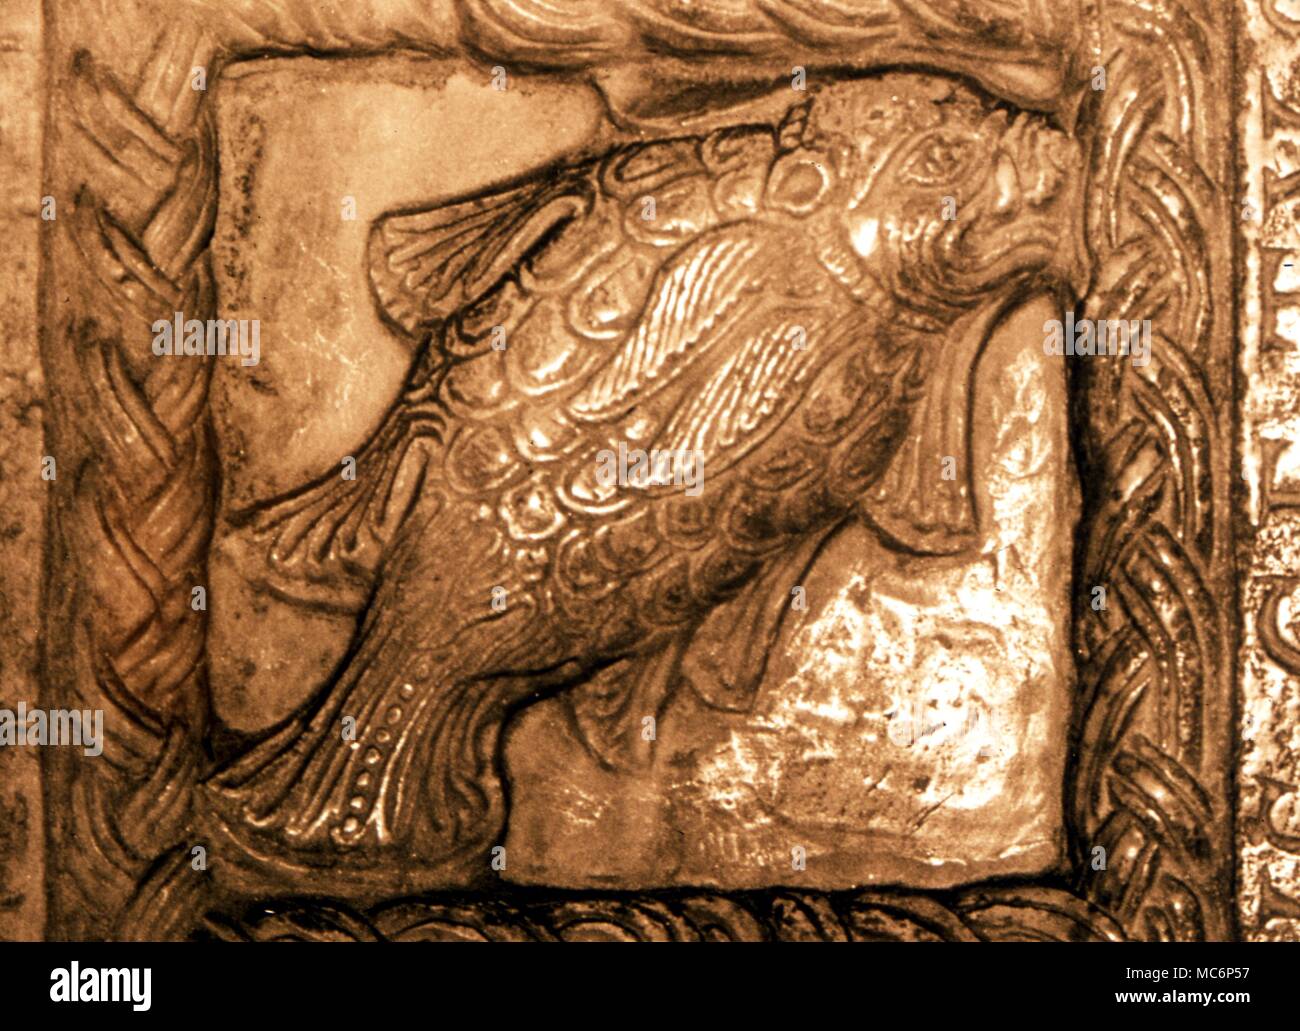 Details Cetus (hier ein Fisch) als eine Konstellation, in der so genannten "Tierkreiszeichen reichen' in der Sagra di San Michele, Susa. Design aus dem 13. Jahrhundert. Charles Walker/ Stockfoto